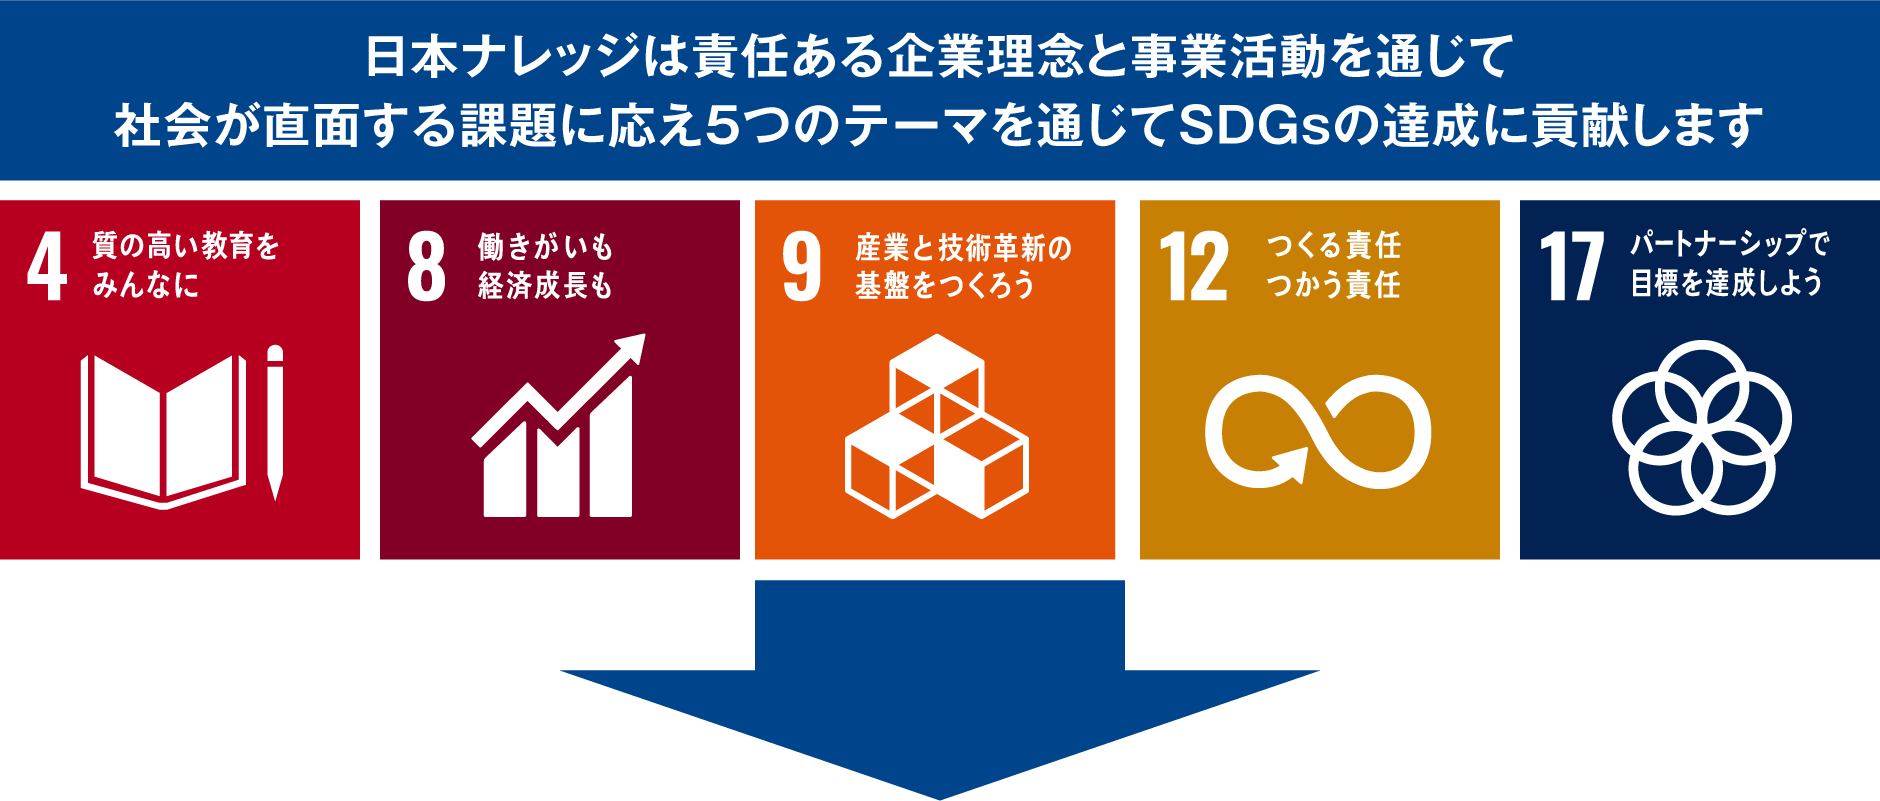 SDGs取組宣言_5つのテーマ